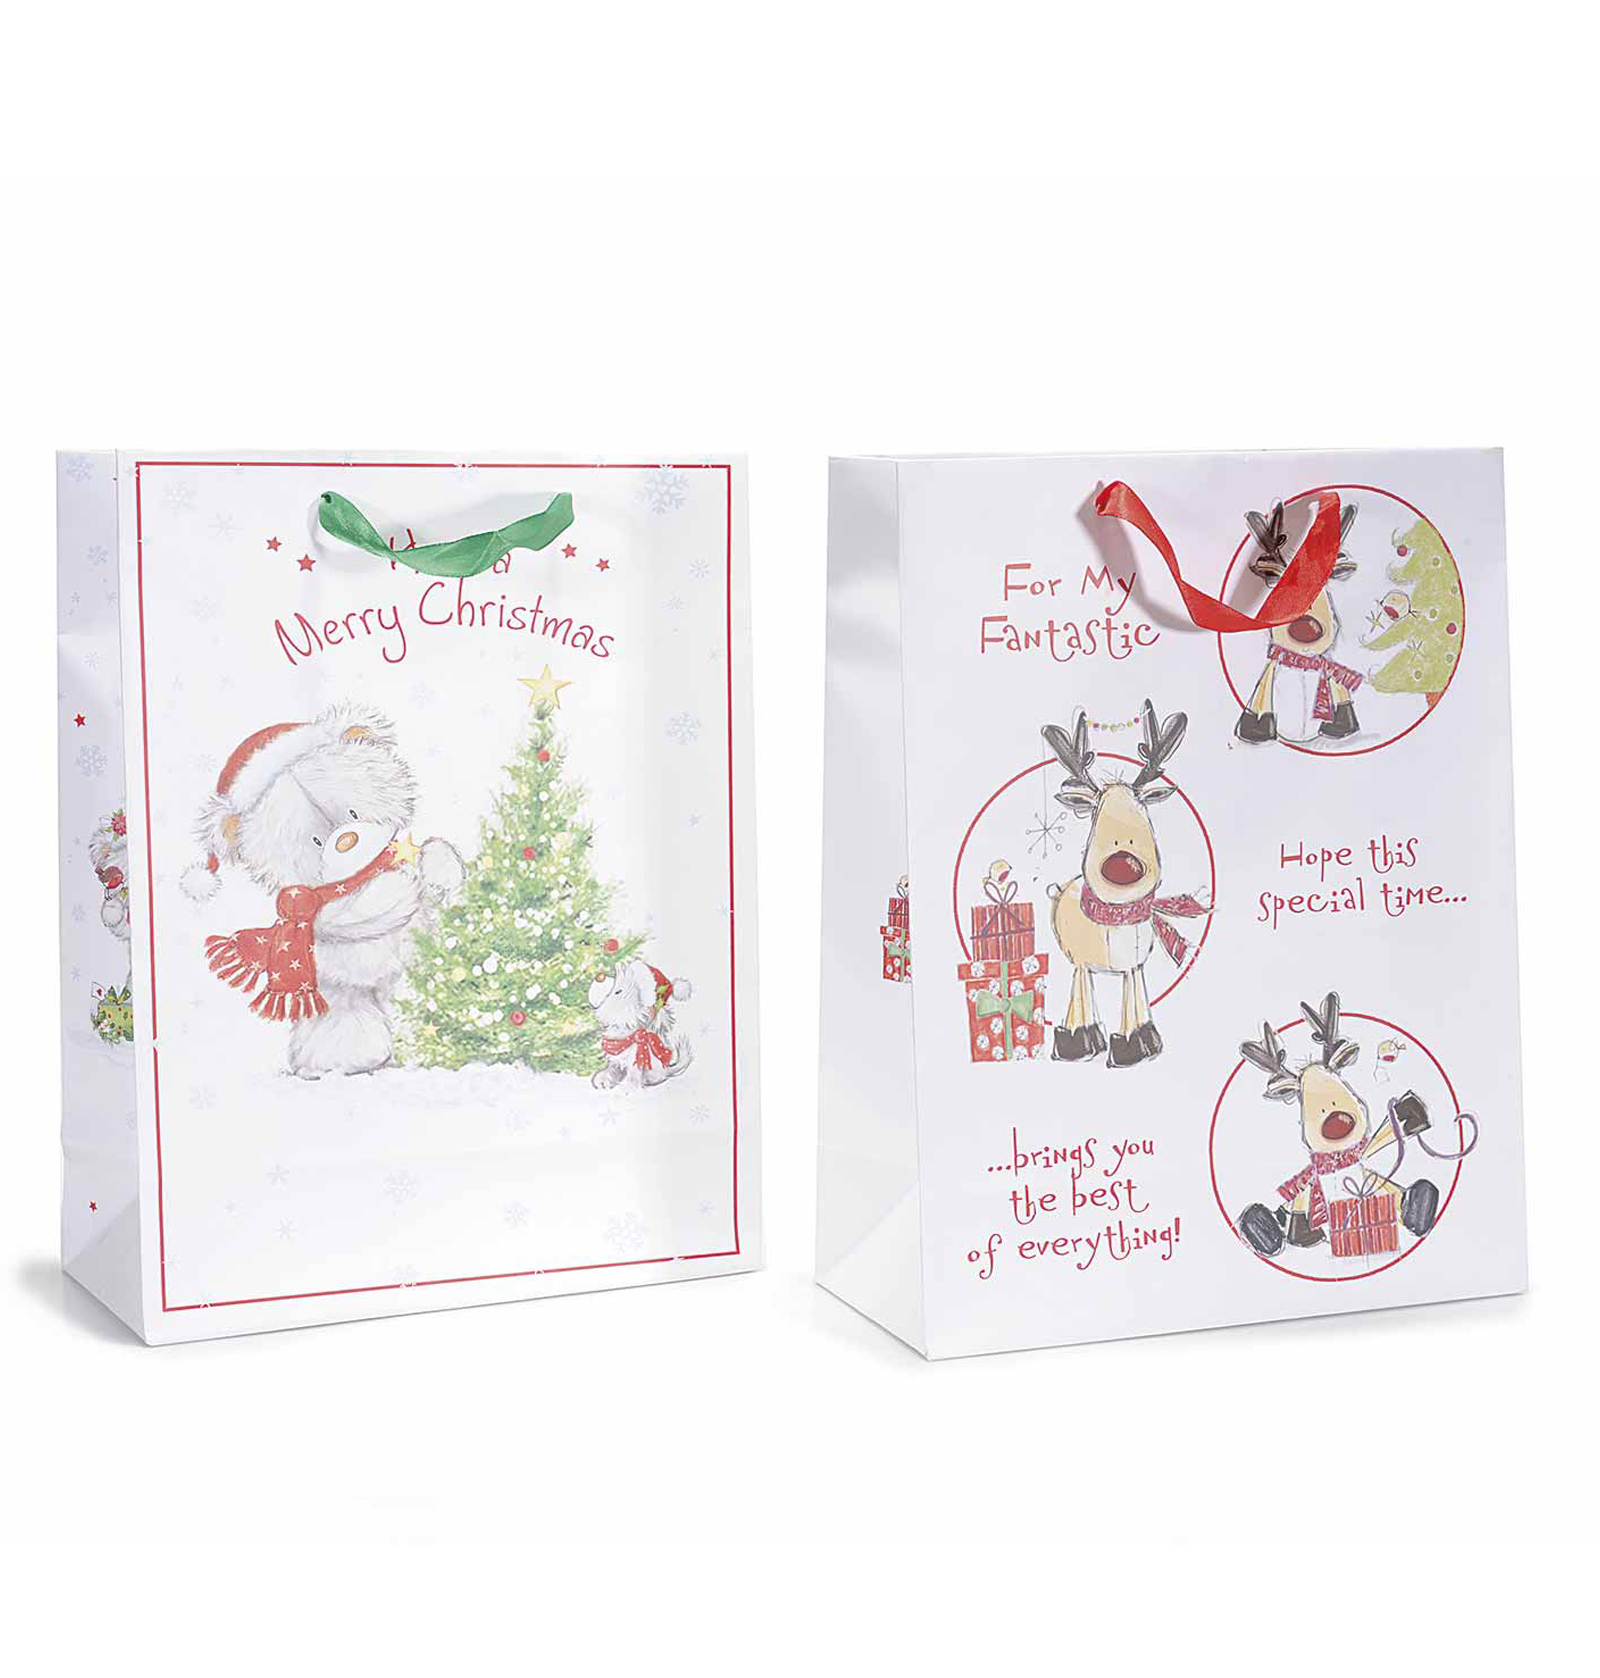 18Pz. Sacchetti buste da regalo in carta colorata con decori natalizi: cm26x12x33,5H (c/manici44)